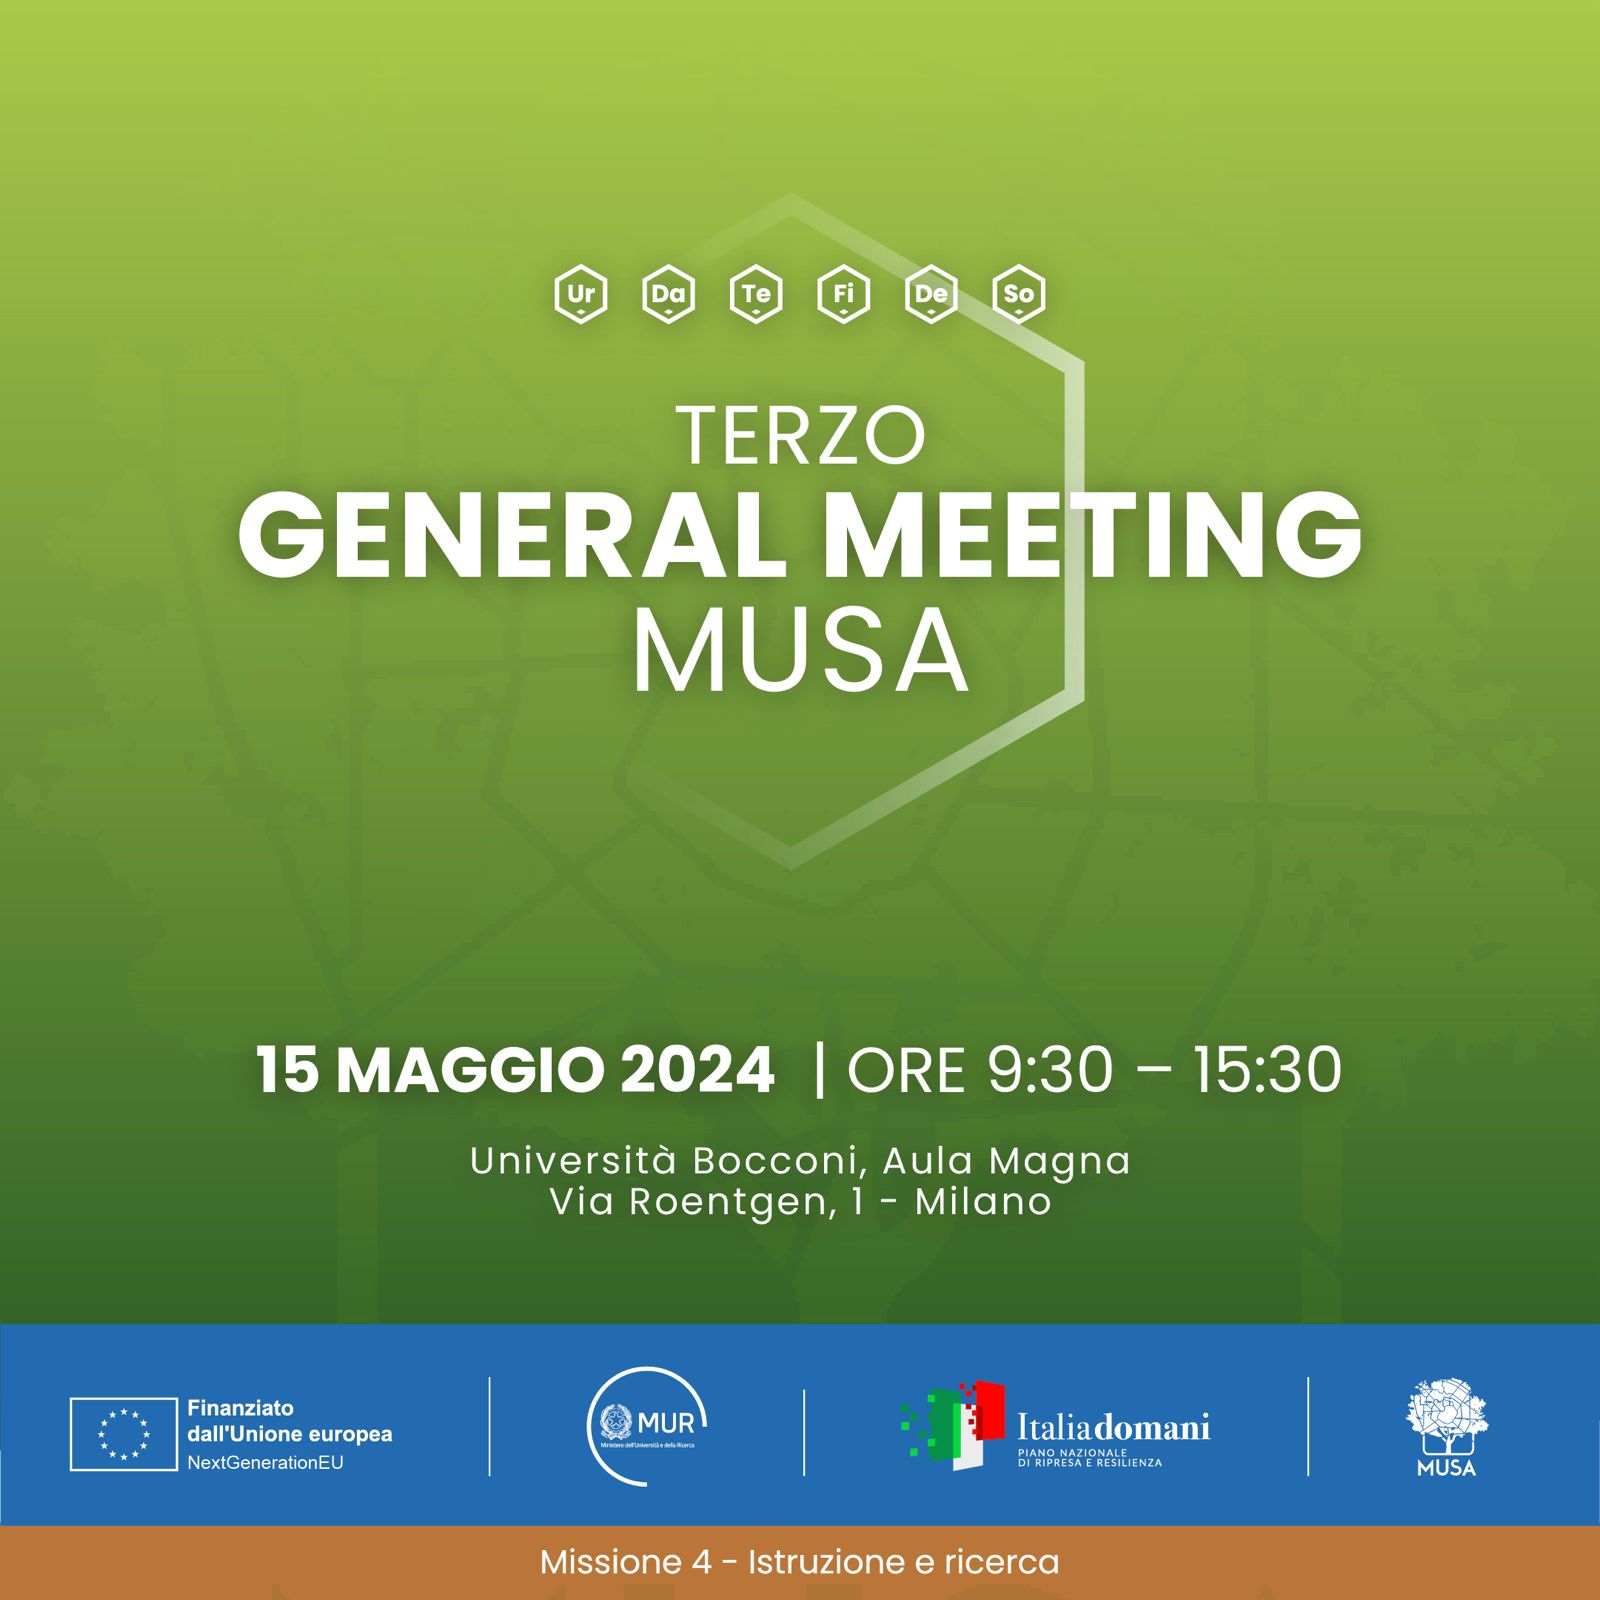 Terzo General Meeting di MUSA, online il programma